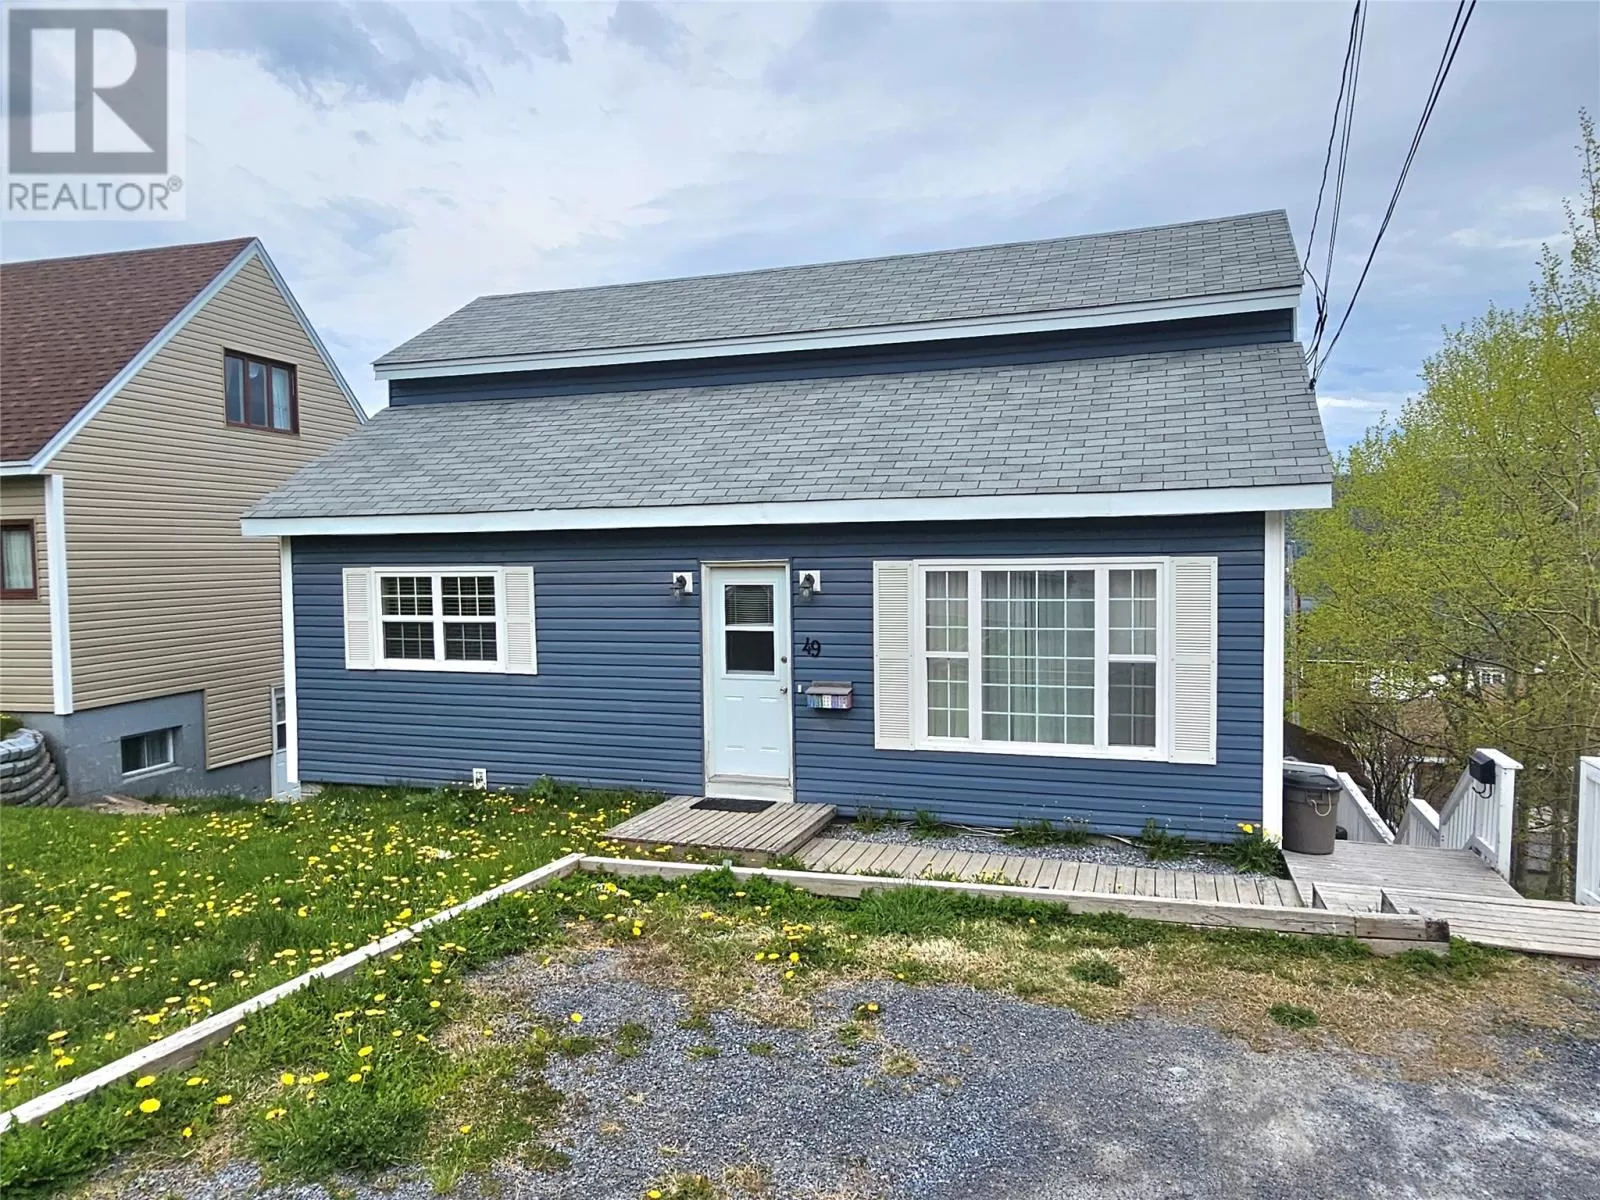 Two Apartment House for rent: 49 Princess Avenue, Corner Brook, Newfoundland & Labrador A2H 1N4